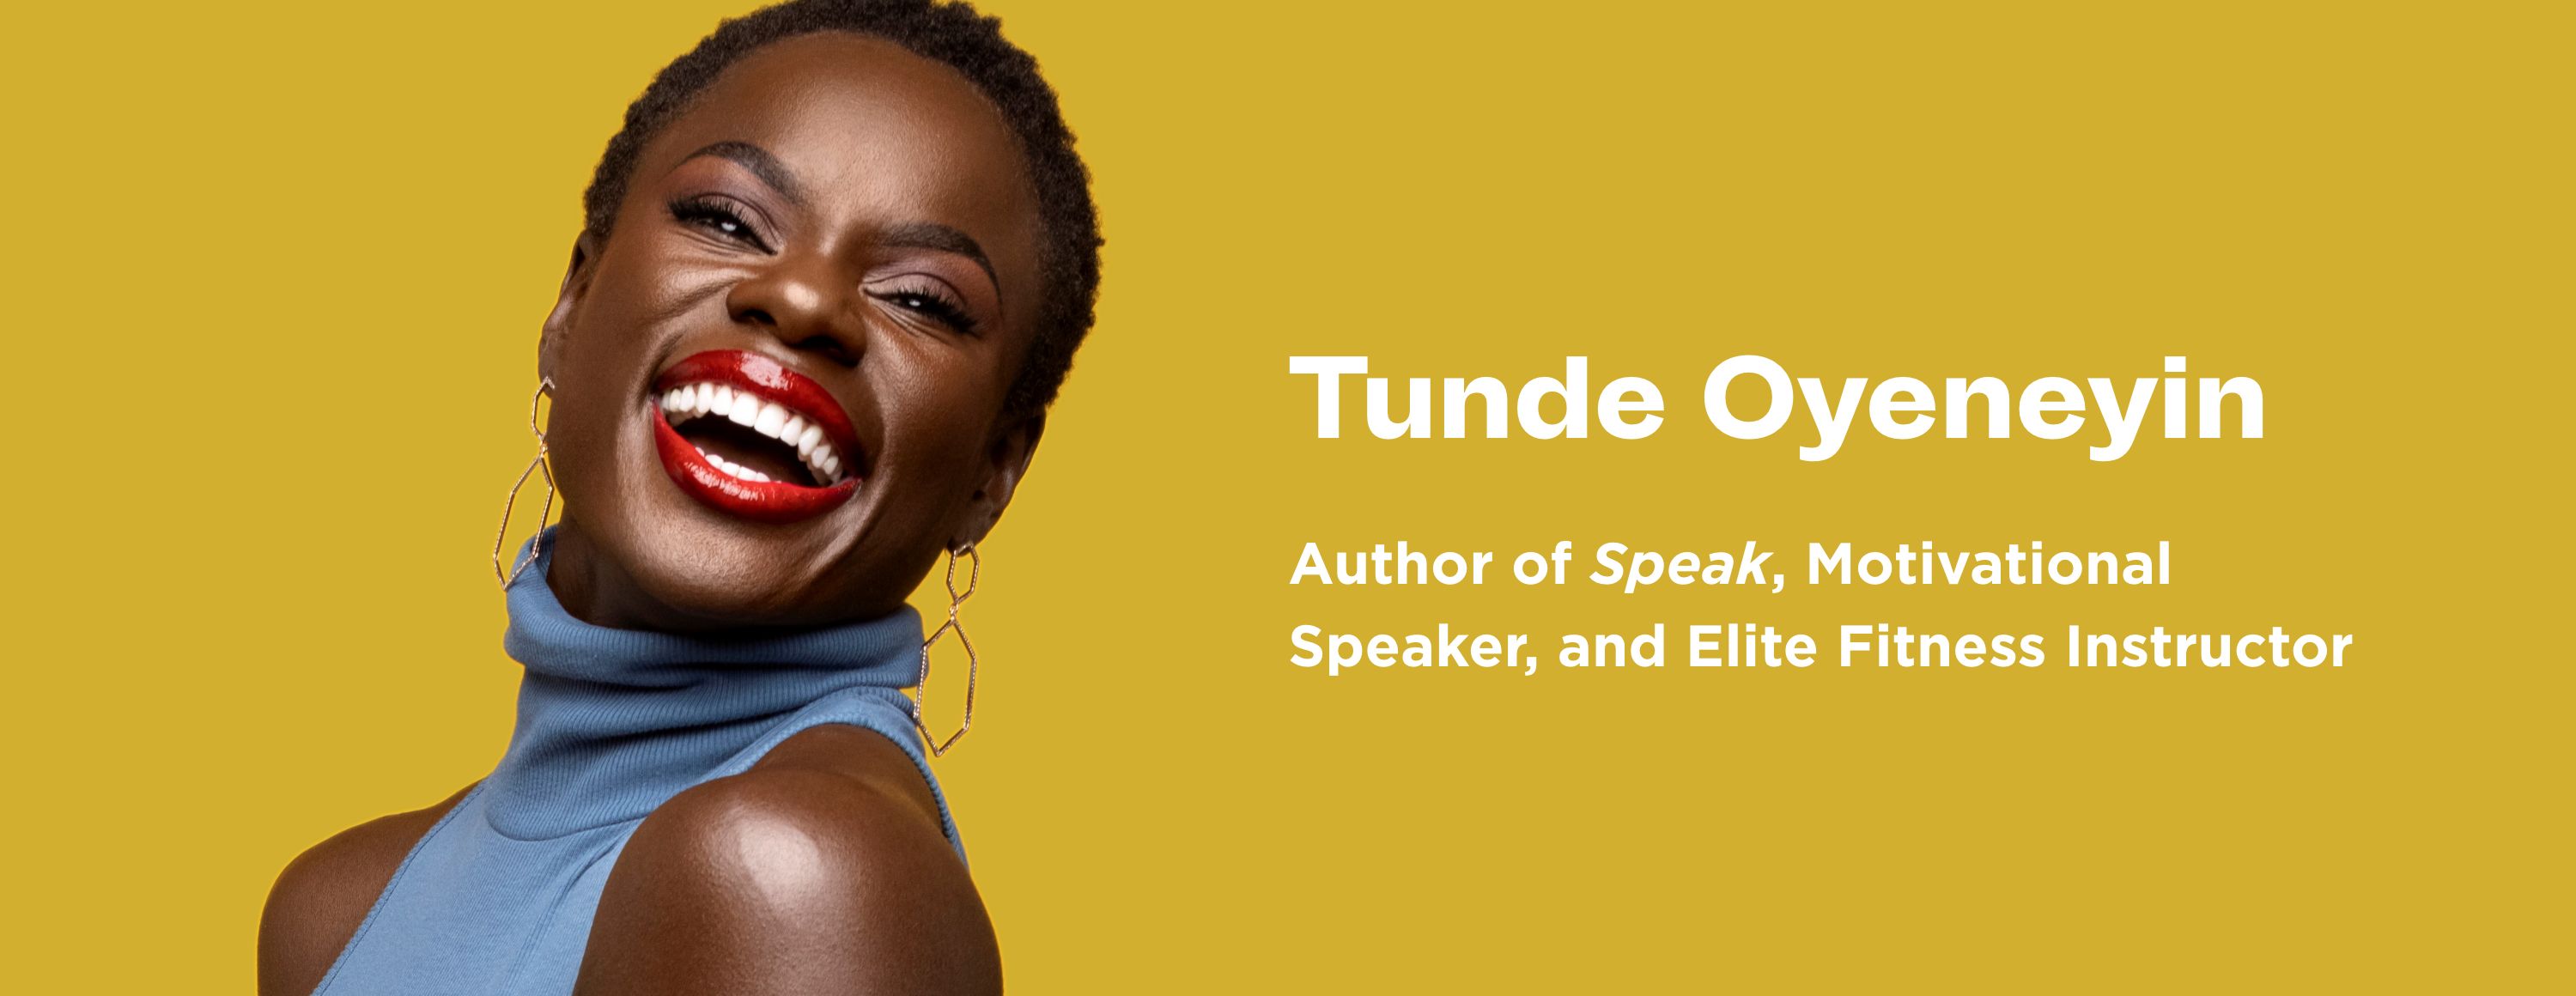 Tunde Oyeneyin: Author of "Speak", Motivational Speaker, and Elite Fitness Instructor